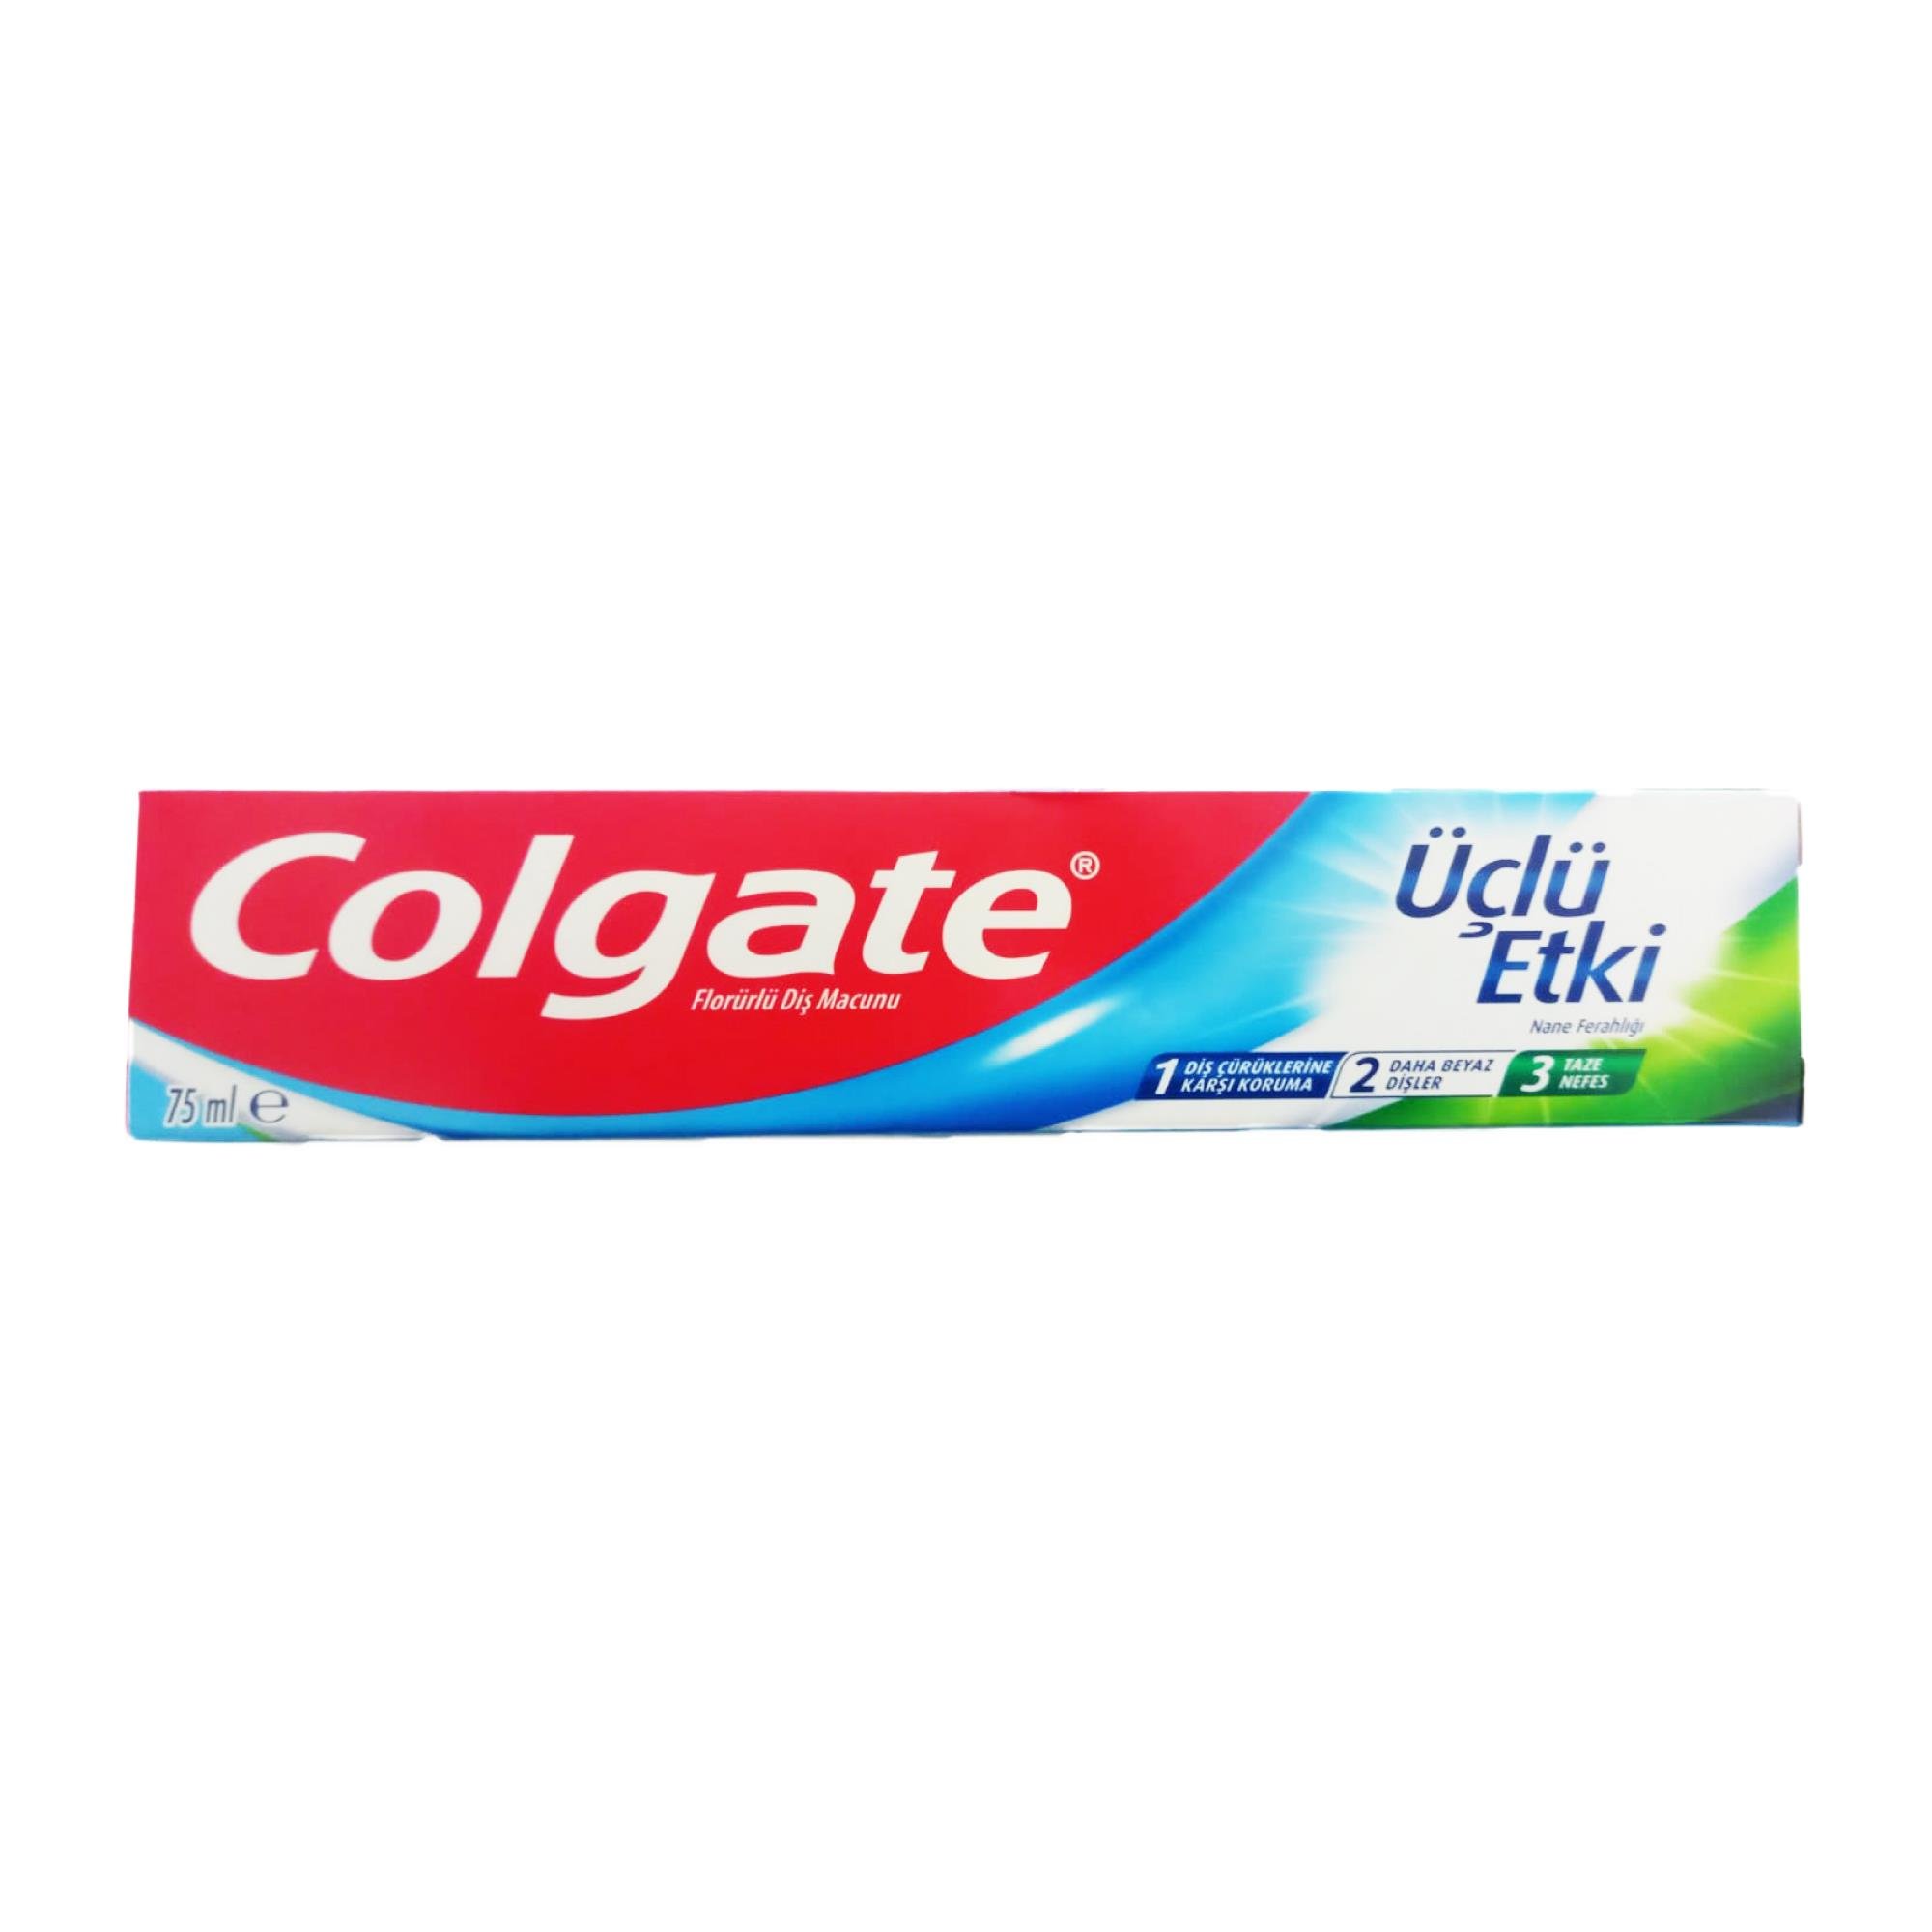 Colgate Diş Macunu Üçlü Etki 75 ml - Platin